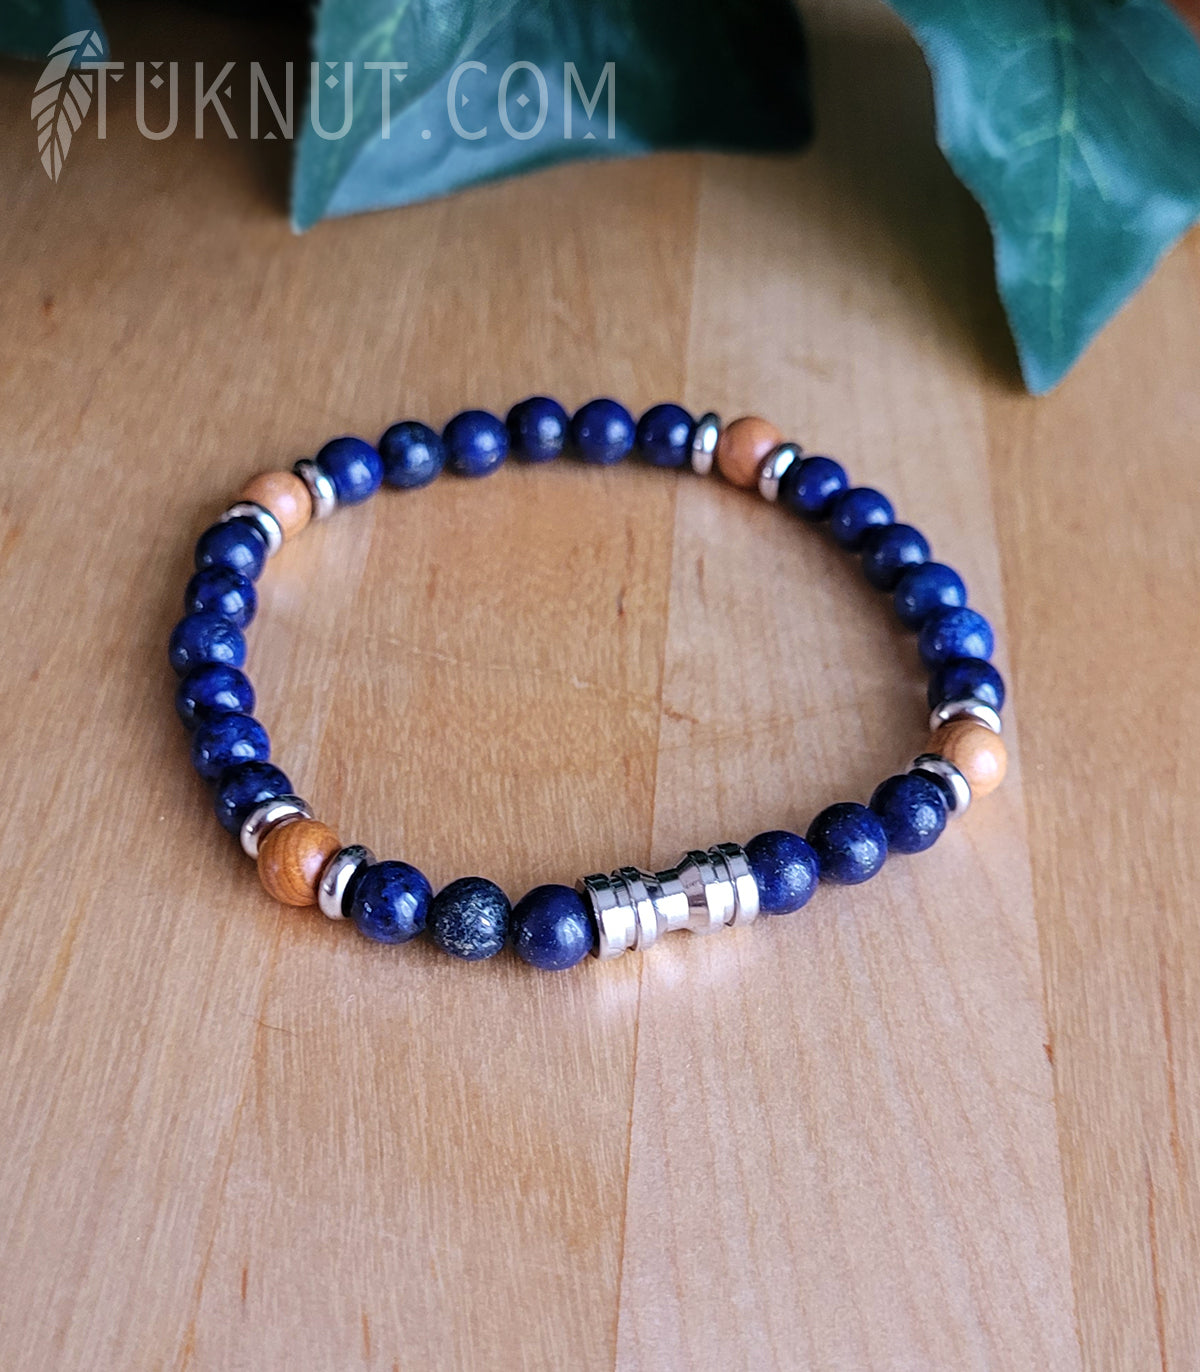 Bracelet extensible avec lapis lazuli, bois et acier inoxydable (couleurs : bleu foncé, brun pâle et argent) TUKNUT